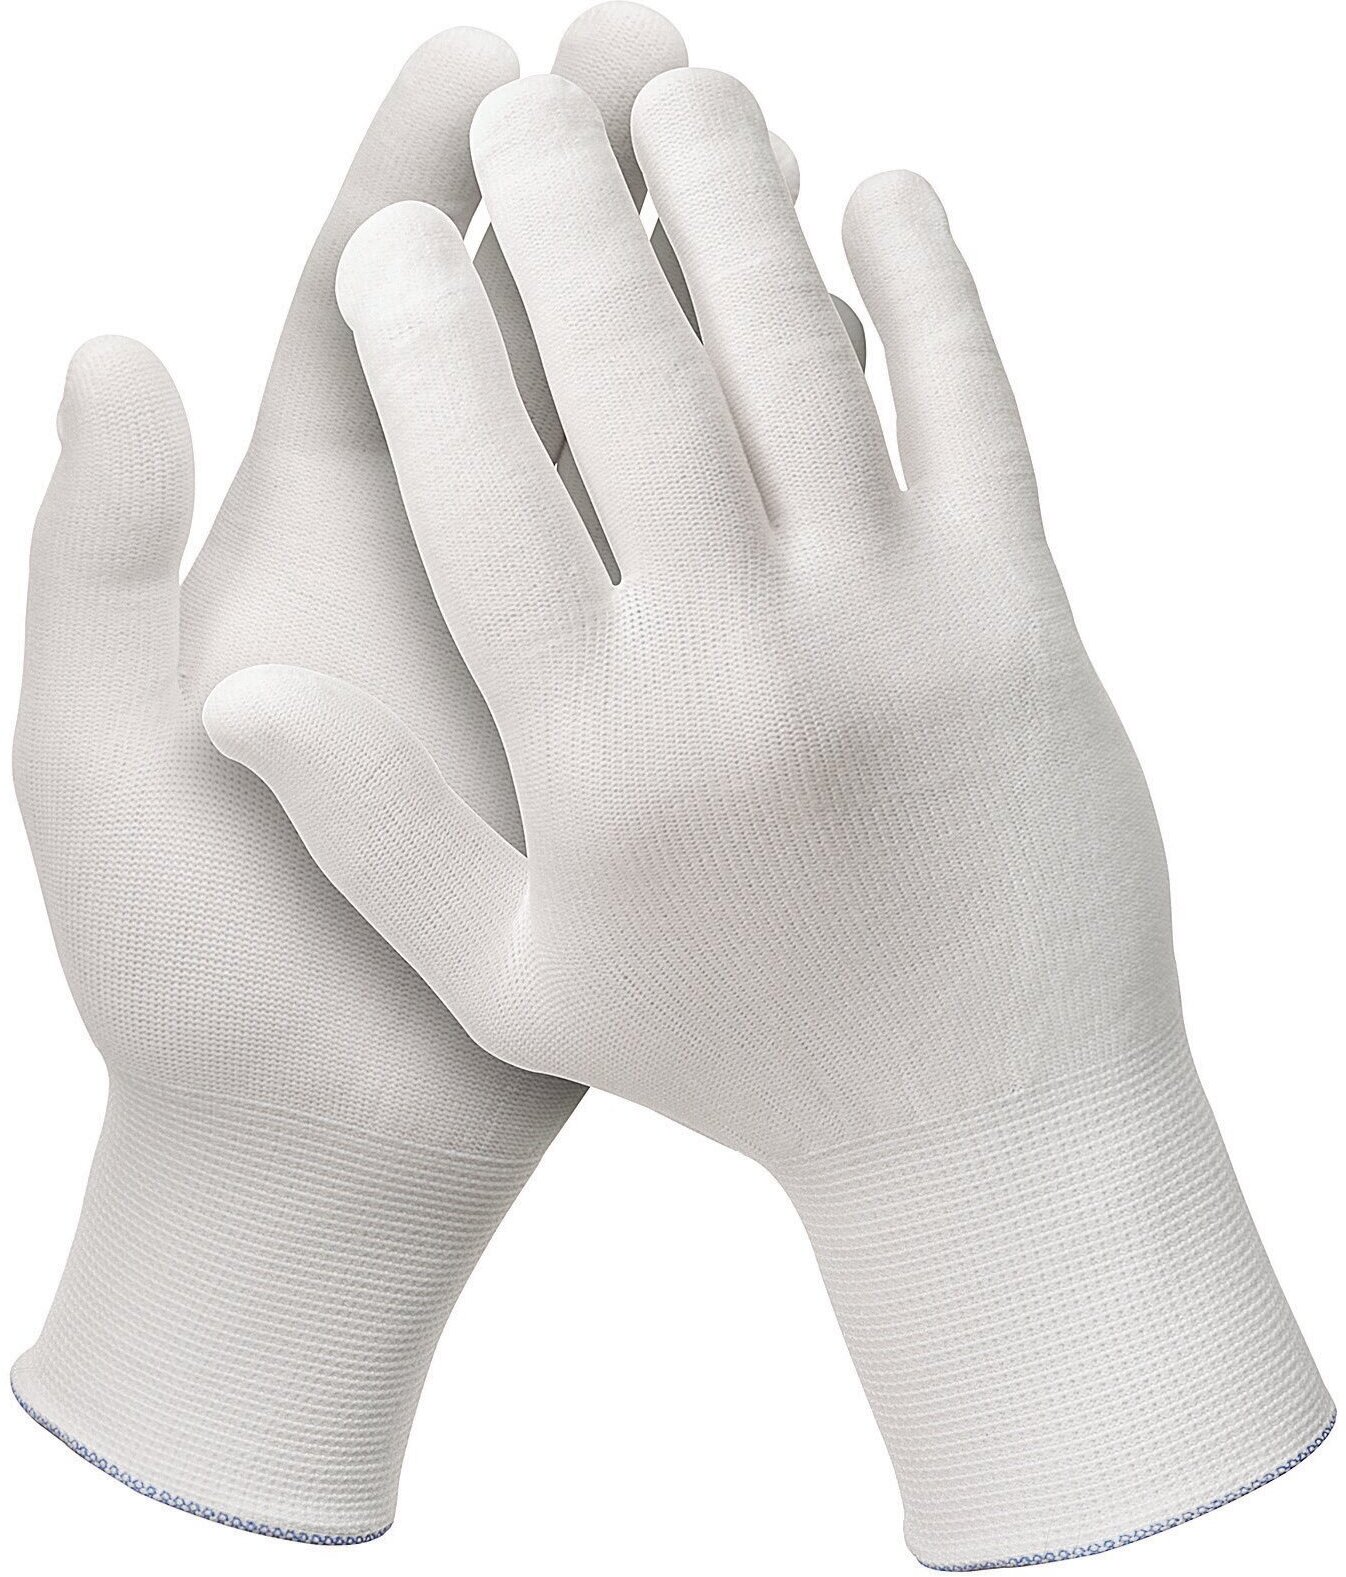 Нейлоновые перчатки ( инспекционные ) KLEENGUARD™ G35 White Nylon для проверки поверхности на предмет отсутствия дефектов